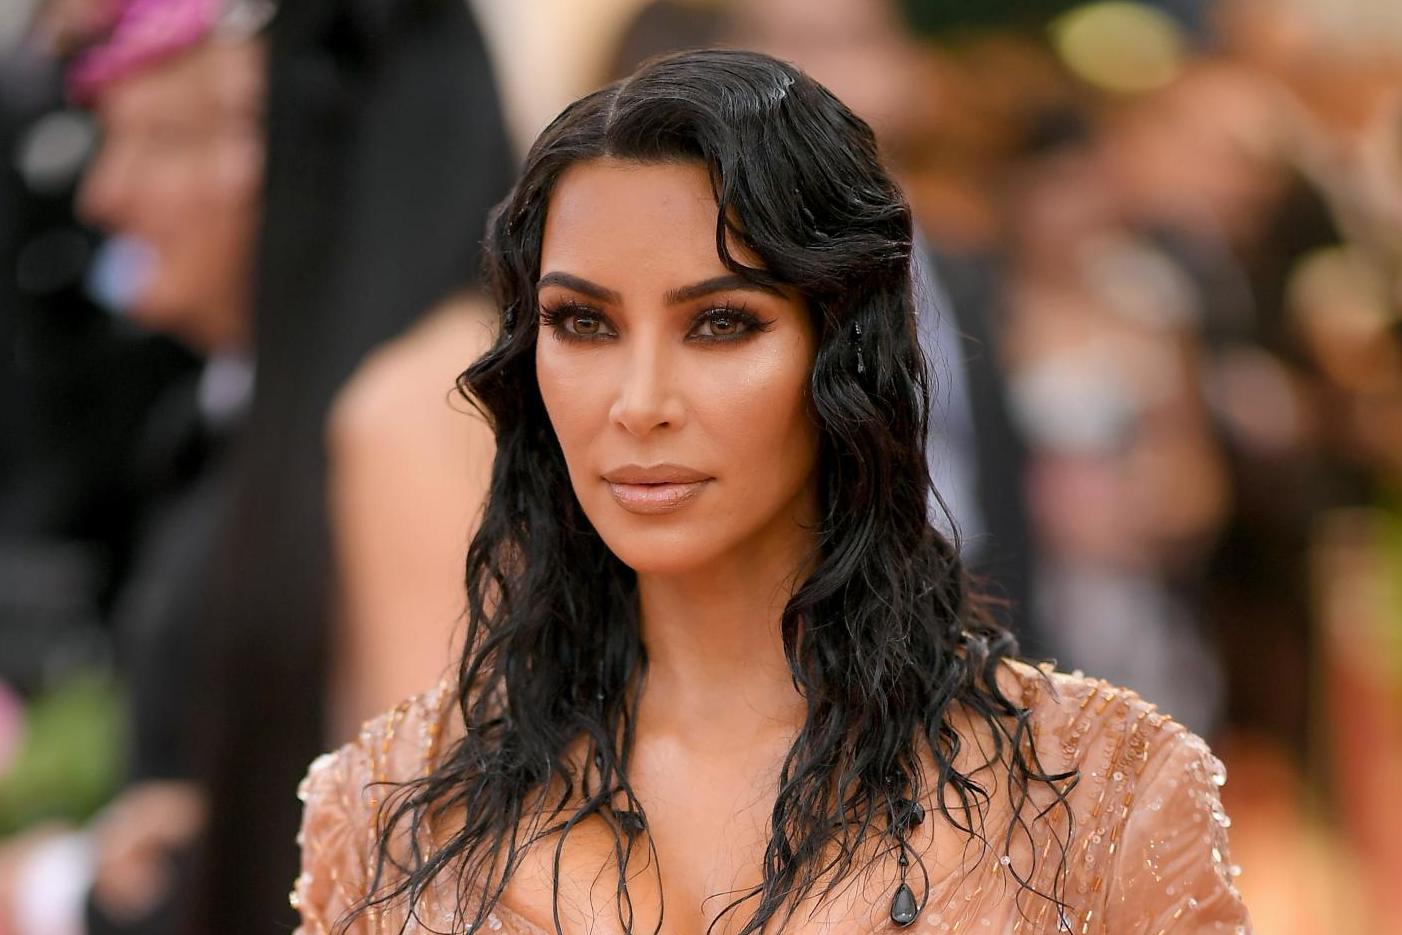 Kim Kardashian's Kimono fashion line to get rename following